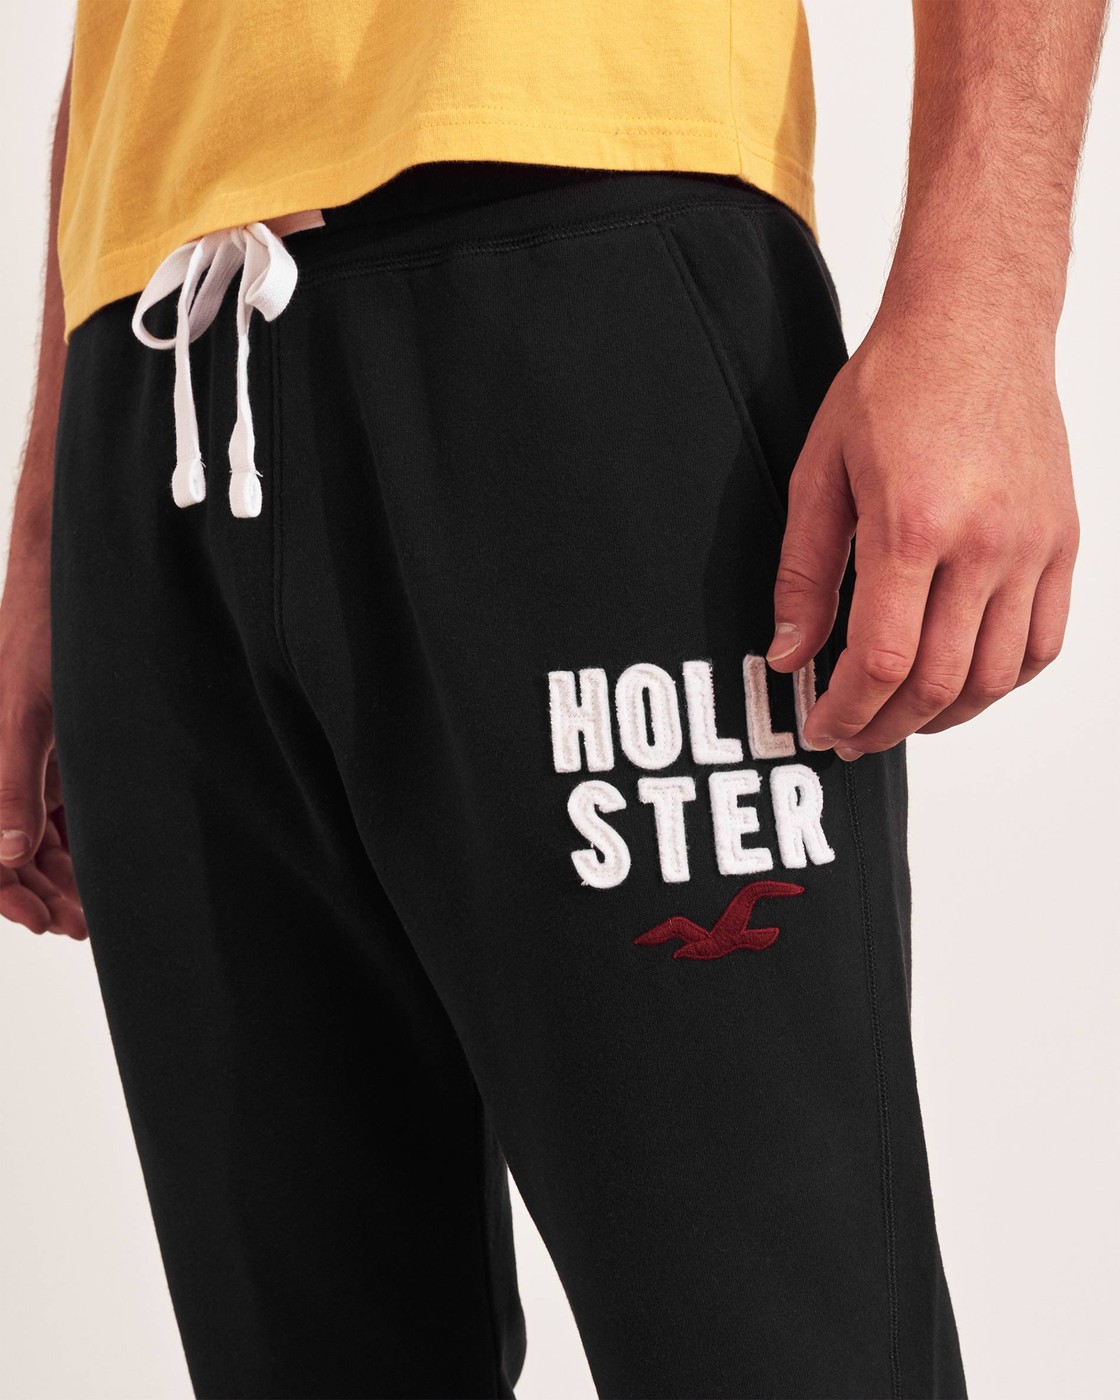 Спортивные штаны - мужские спортивные штаны Hollister, M, M